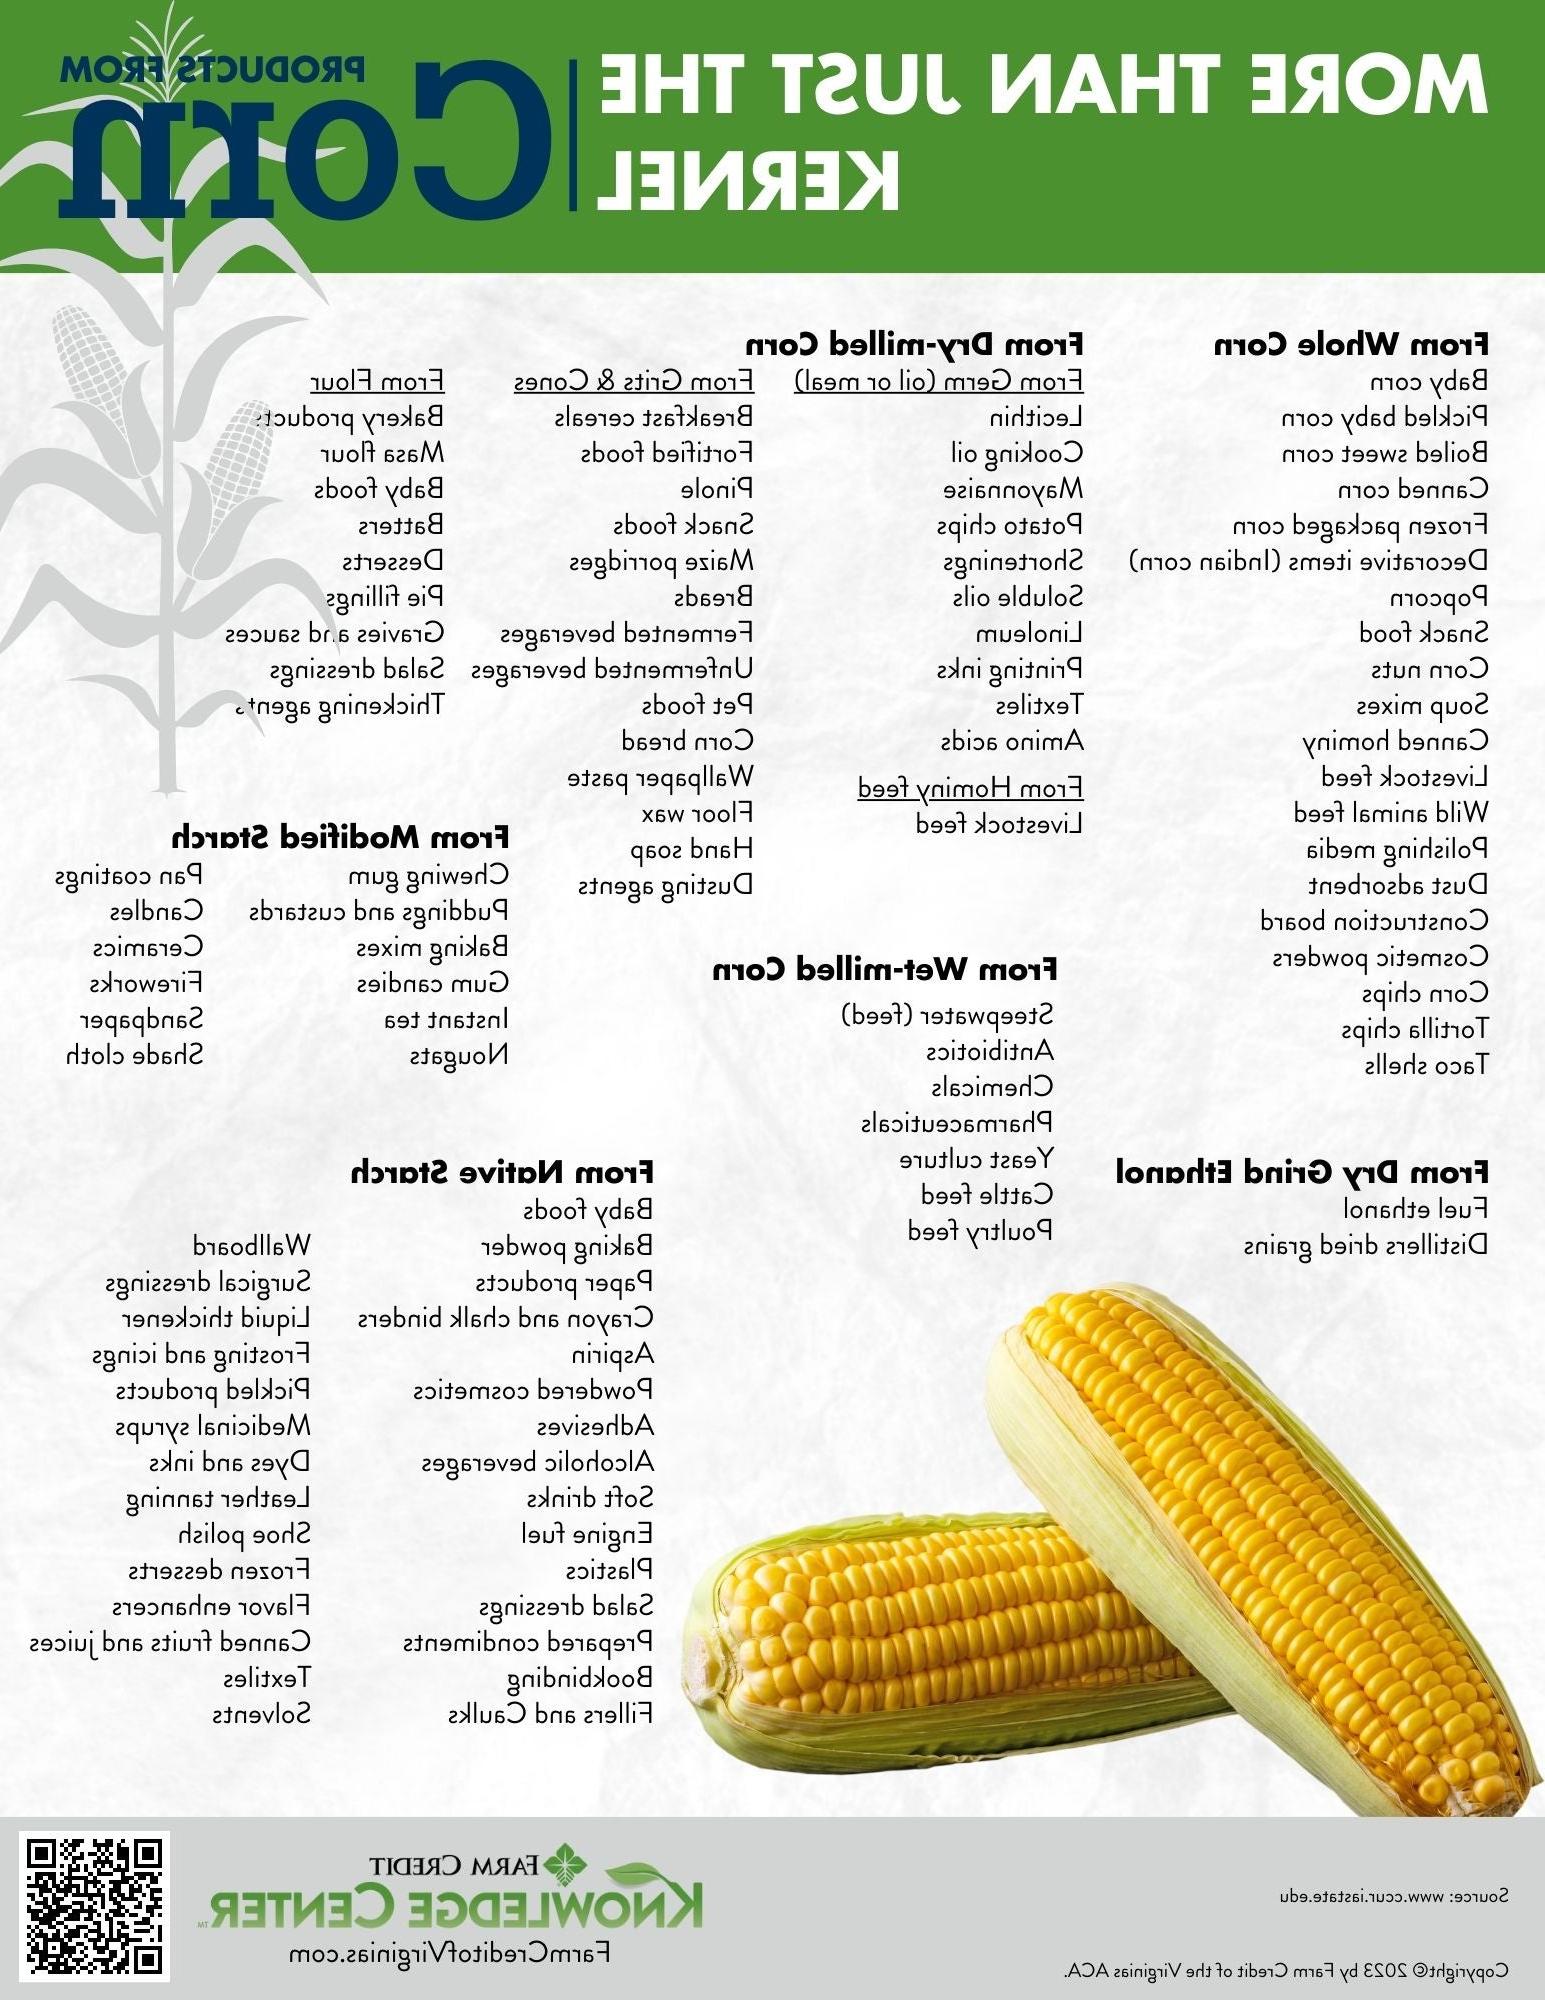 不仅仅是玉米产品信息图